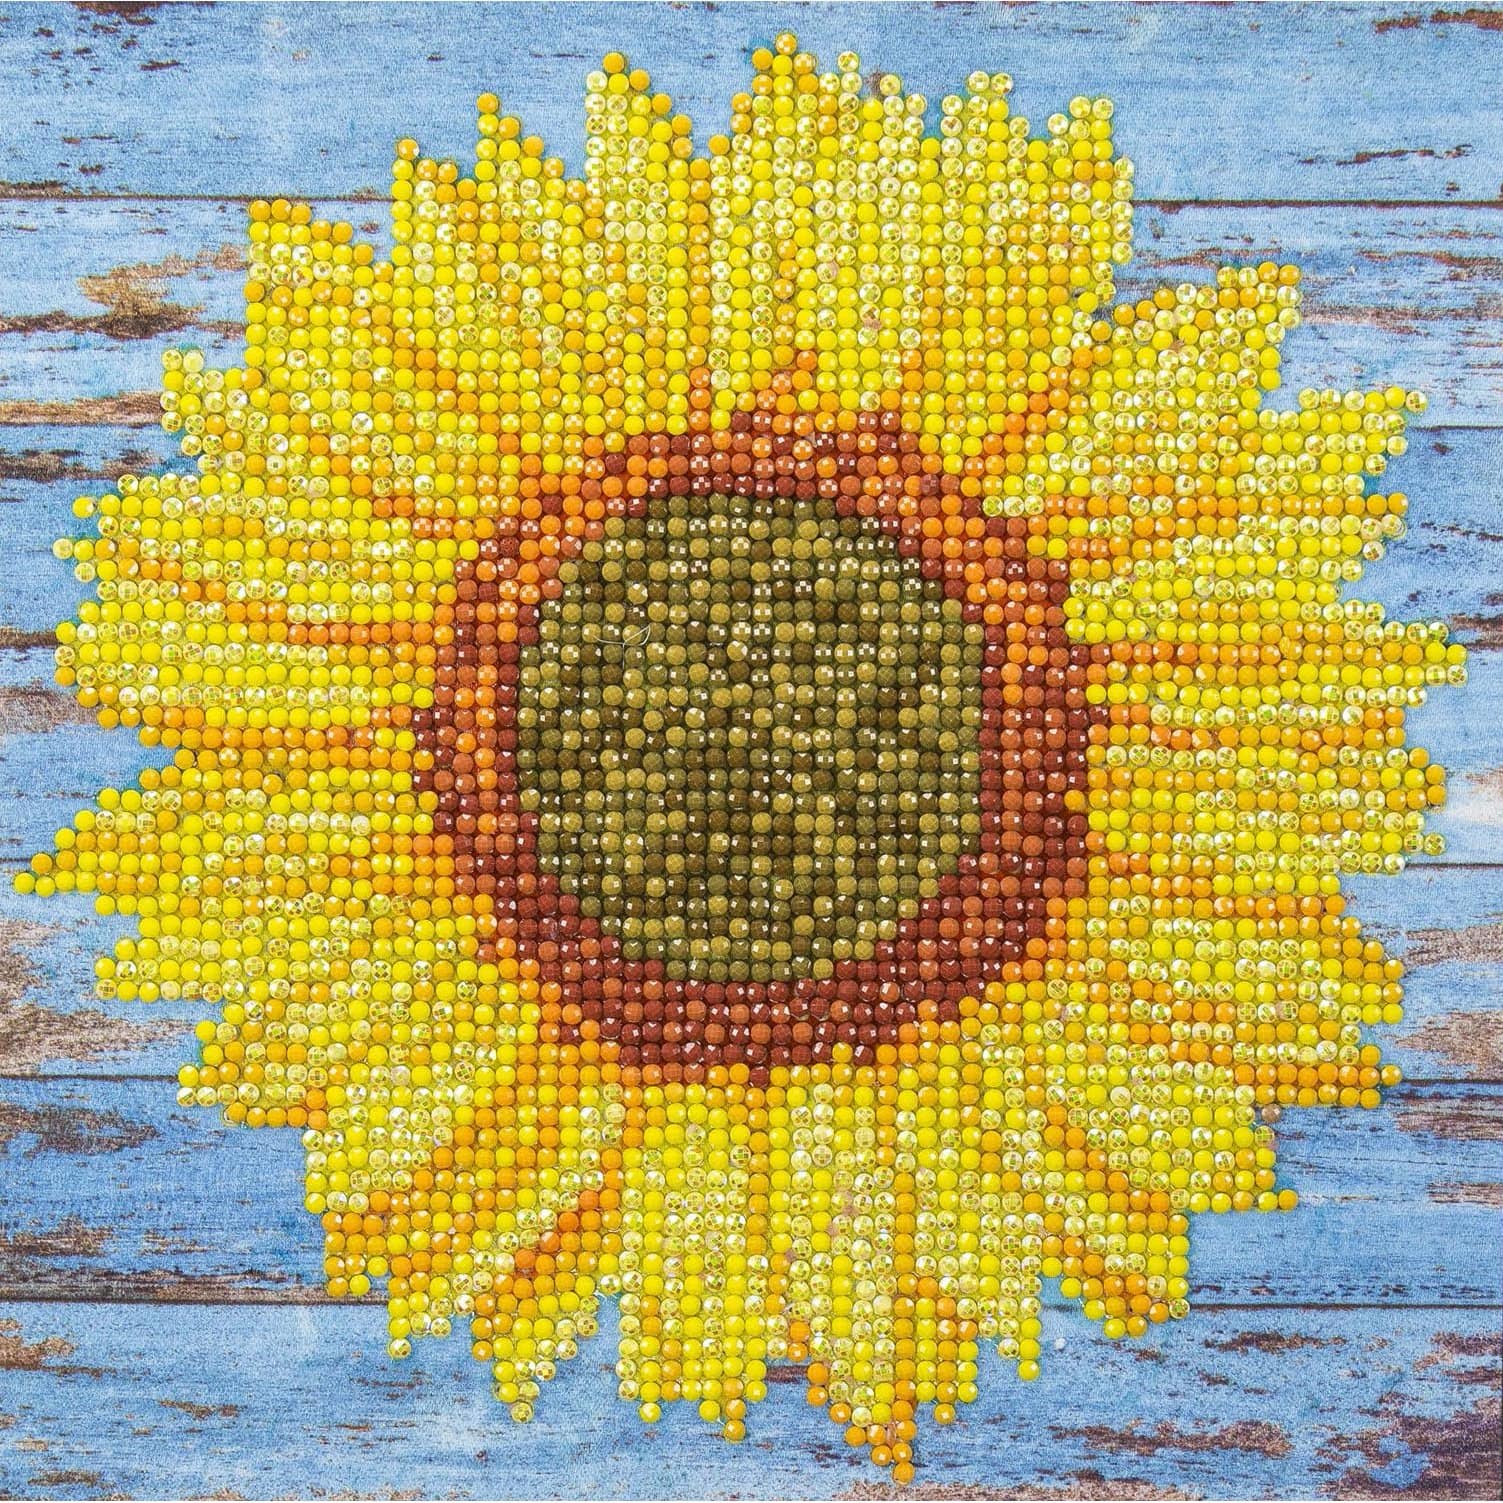 Sunflowers Basket On Table Diamond Painting 